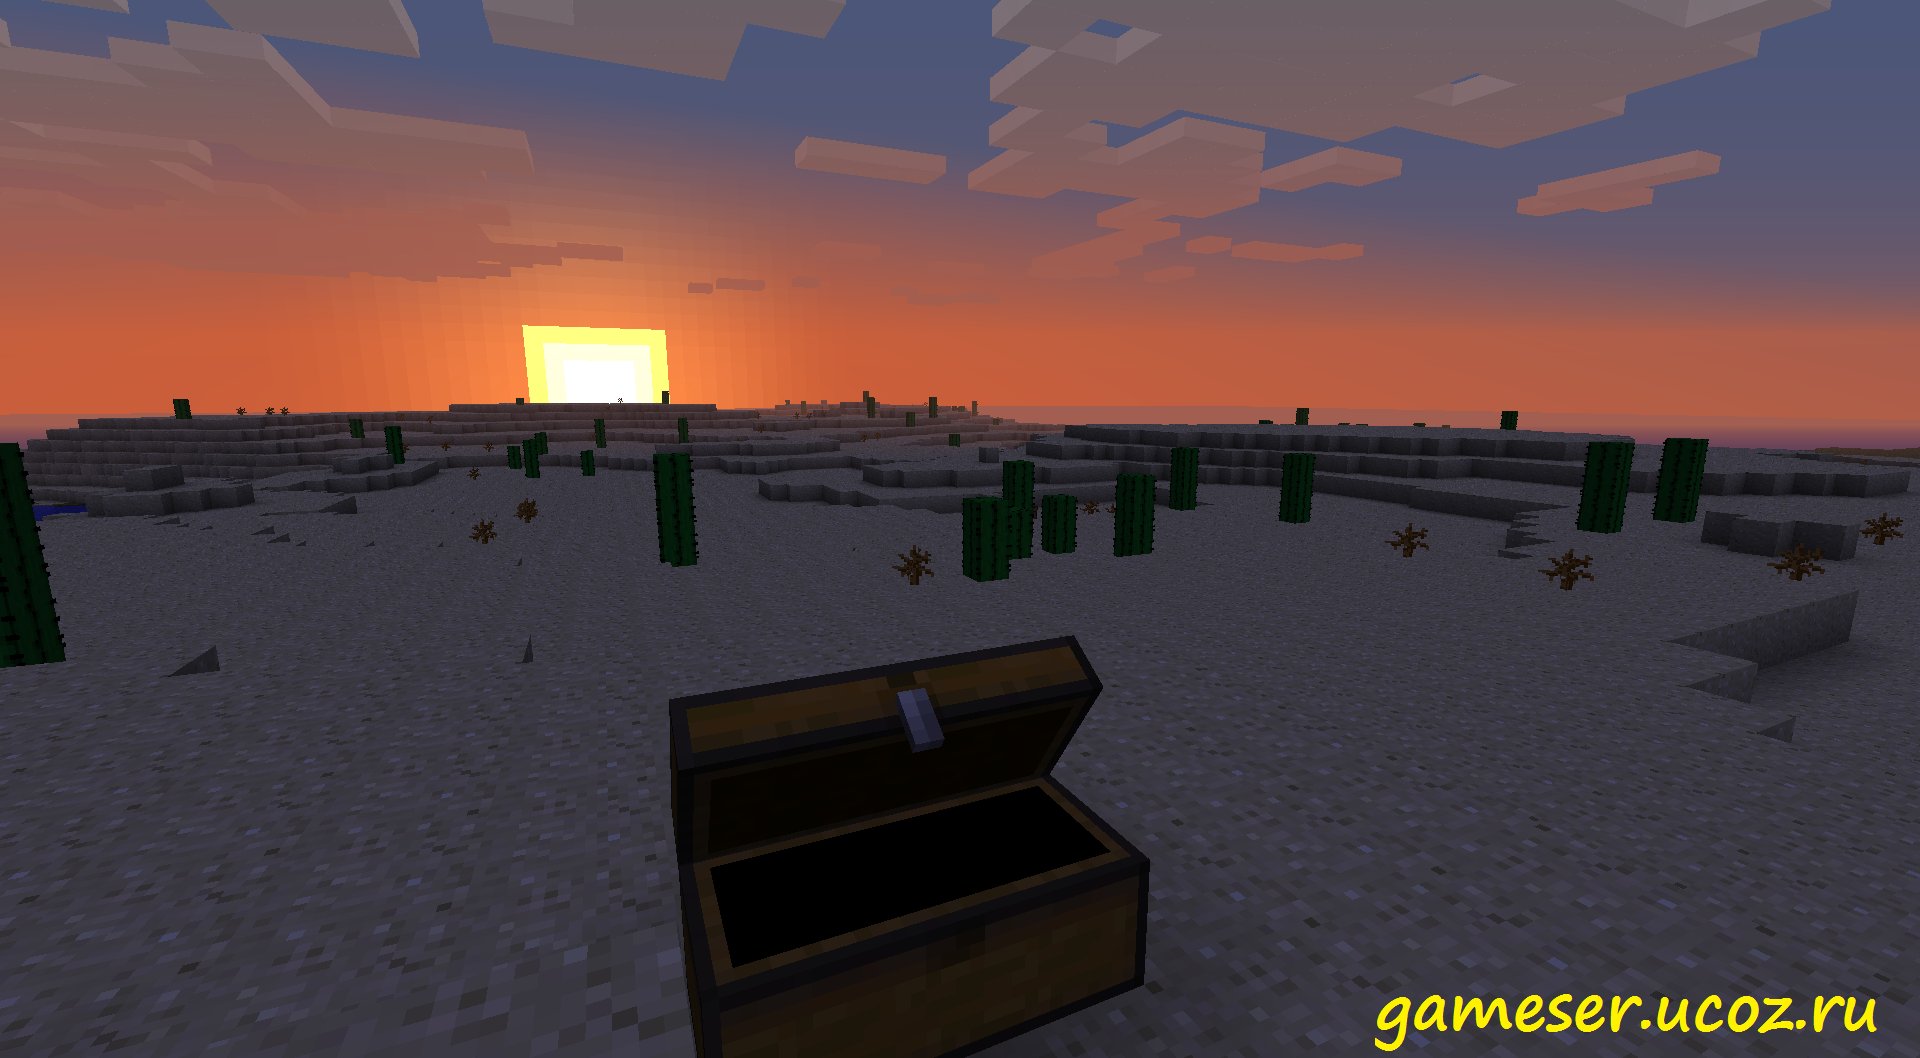 Новая игра нотча. Пустыня майнкрафт. Храм в пустыне майнкрафт. Minecraft 1.8 Adventure update. Мод на солнце в майнкрафт.